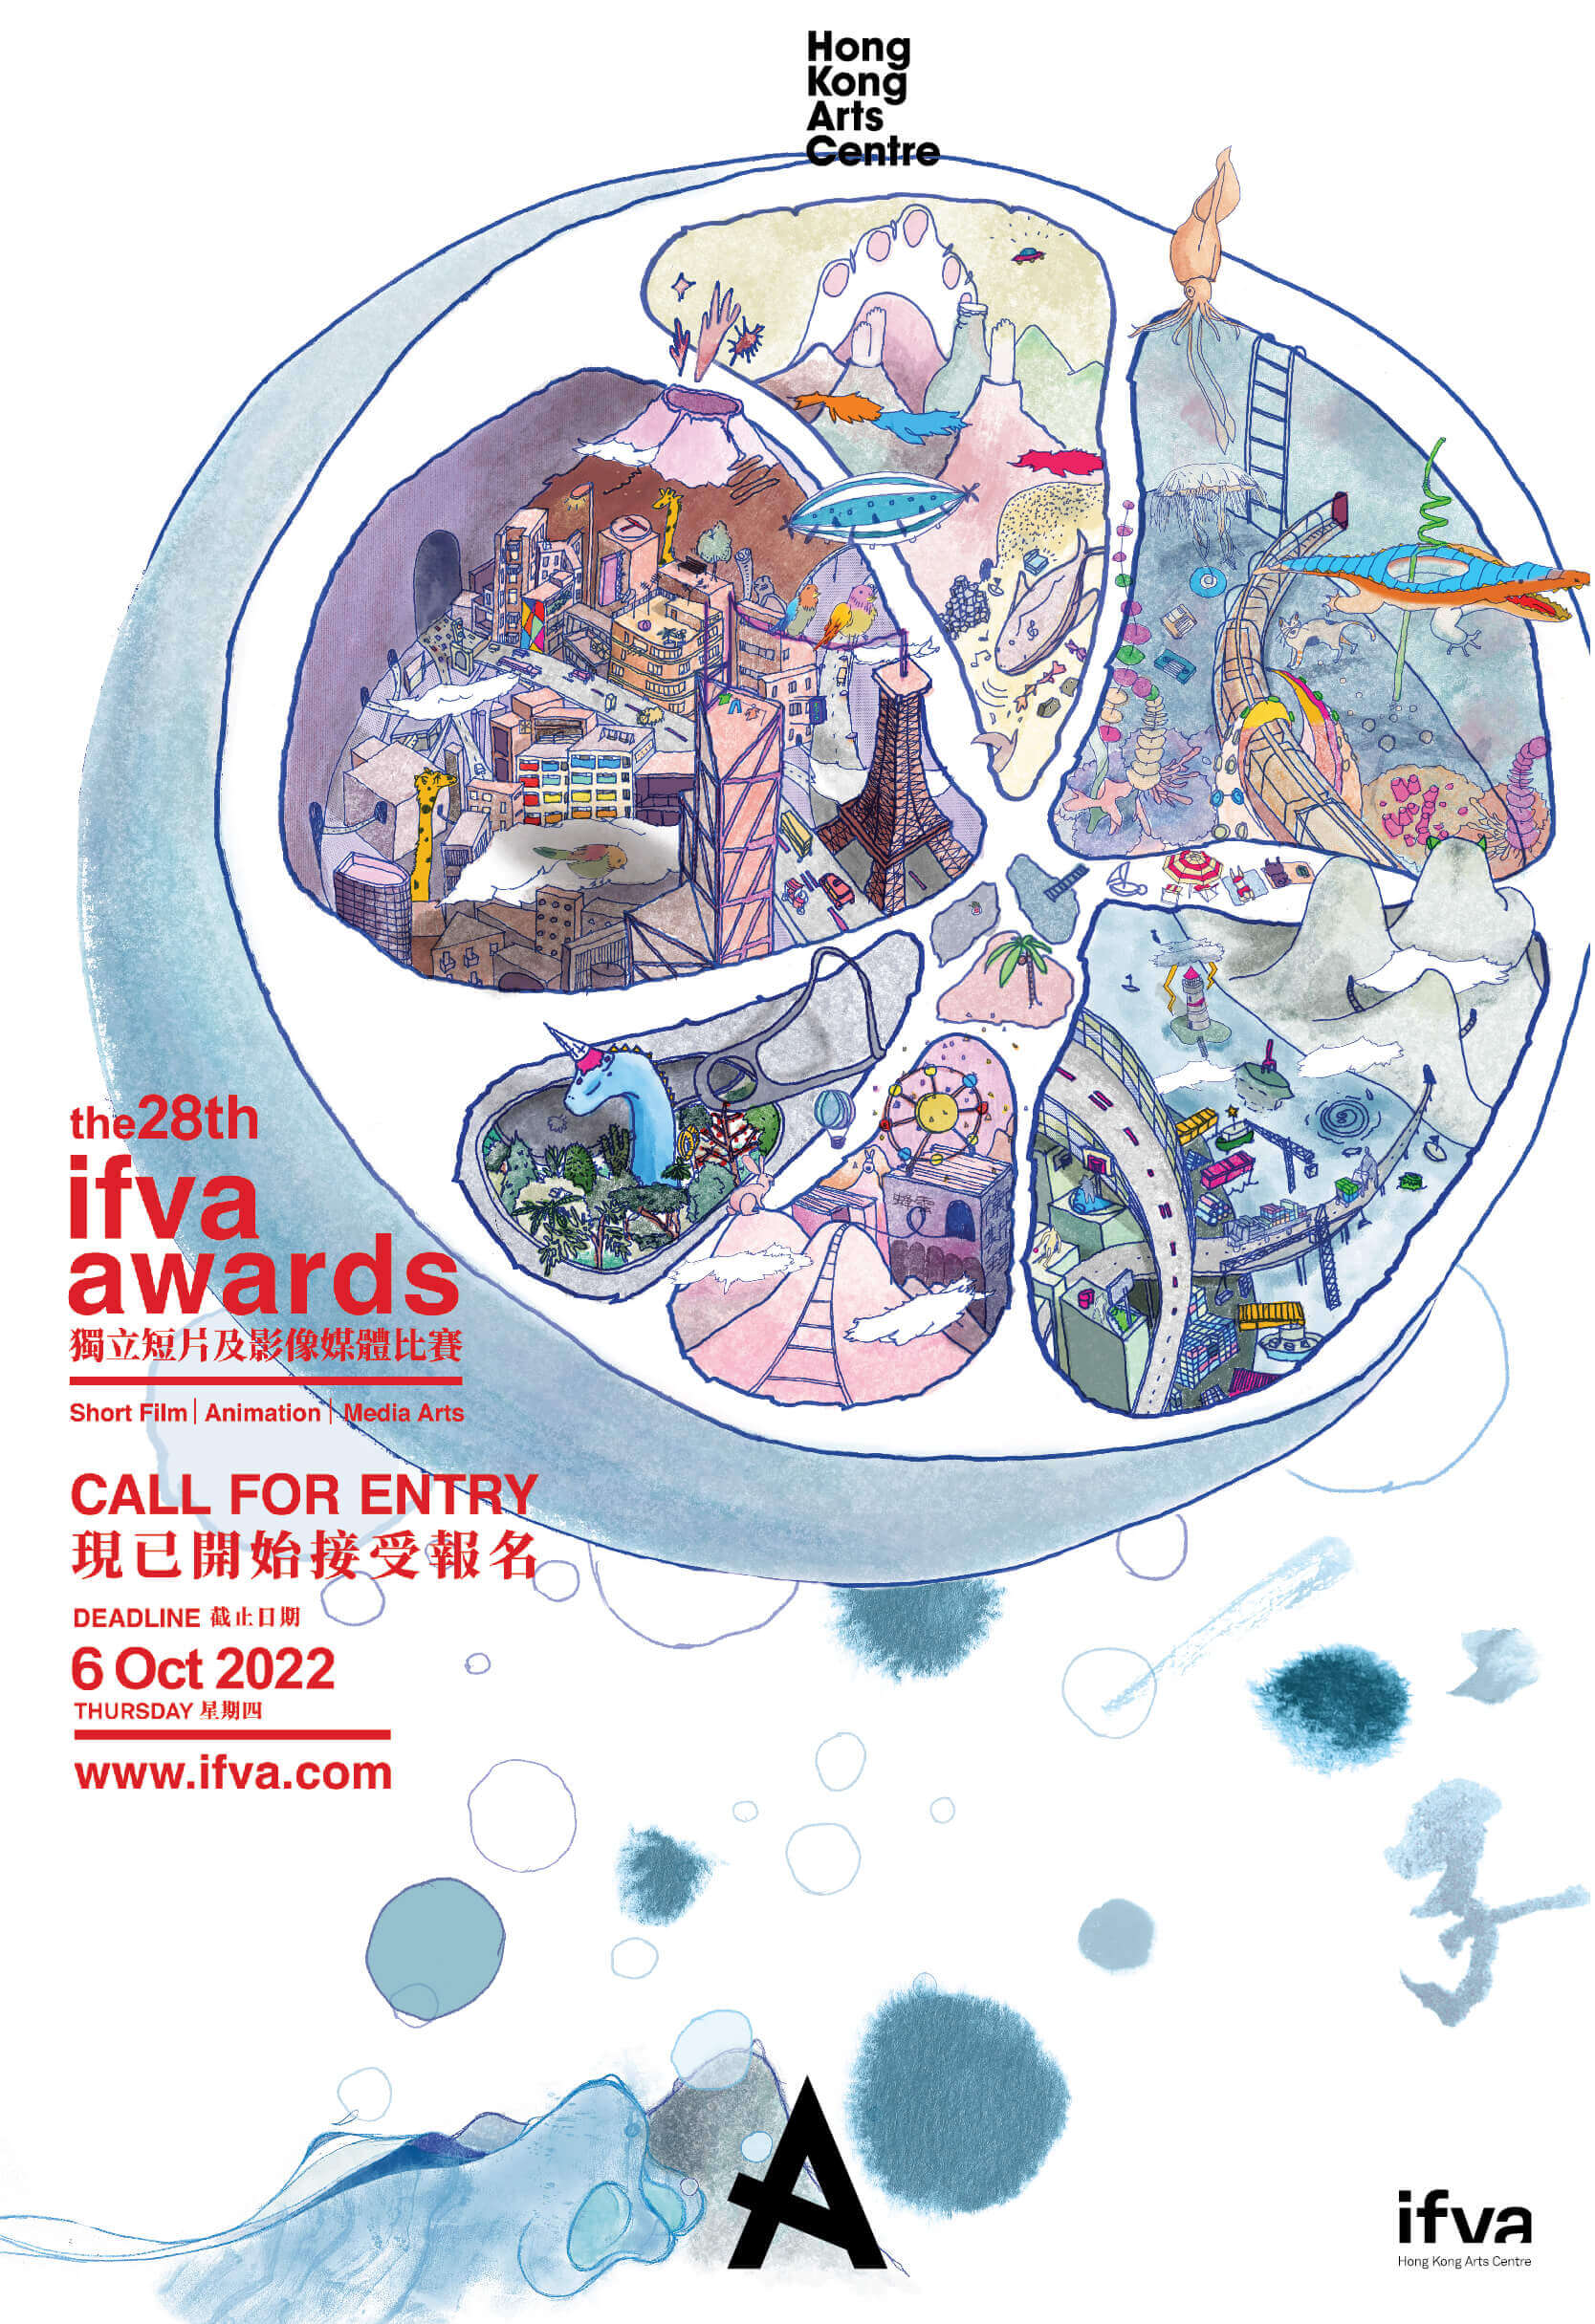 The 28th ifva Awards